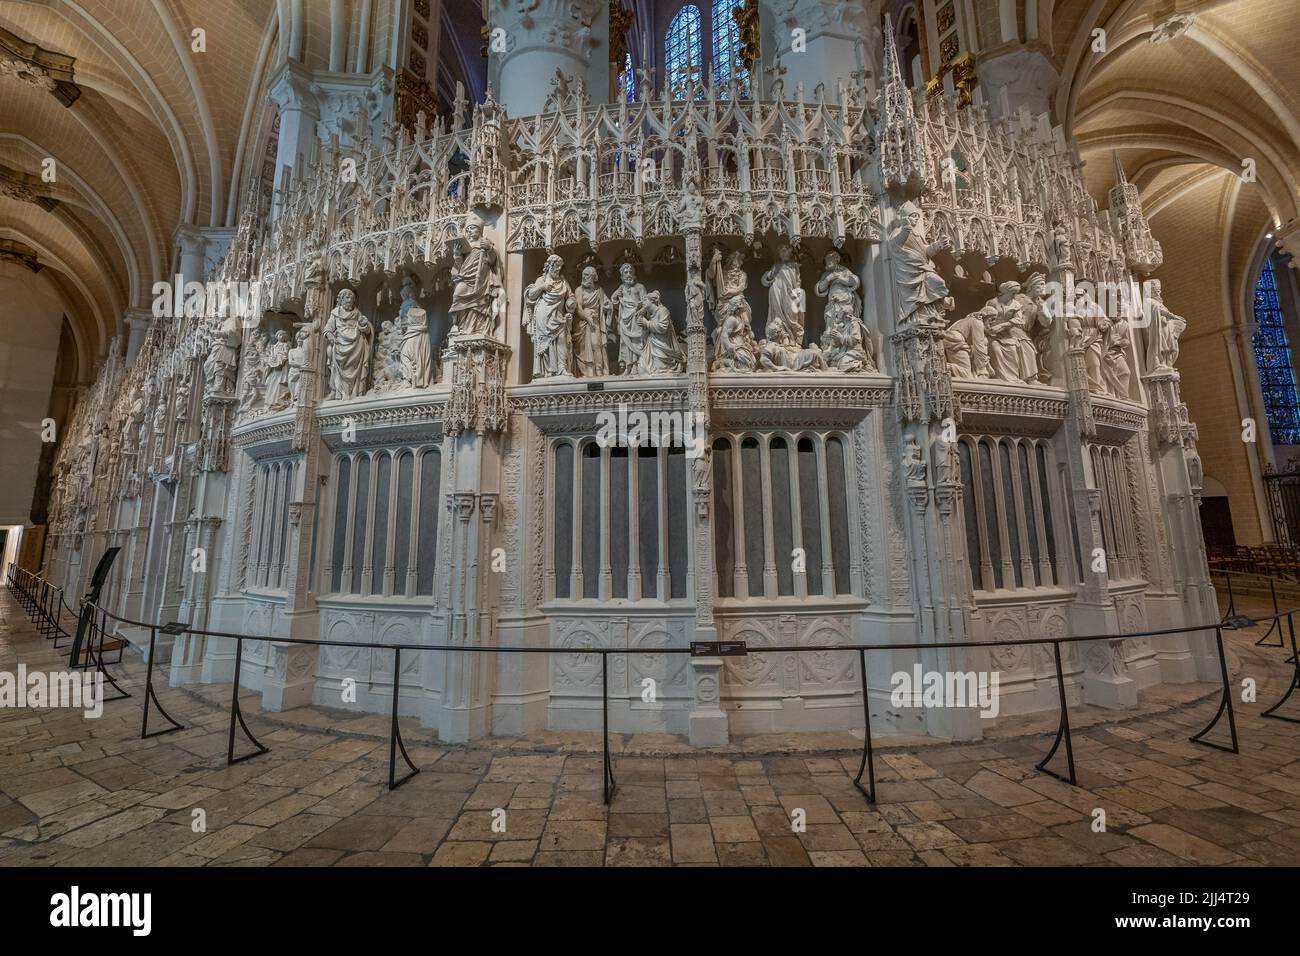 Le mur du chœur de la cathédrale de Chartres Banque D'Images